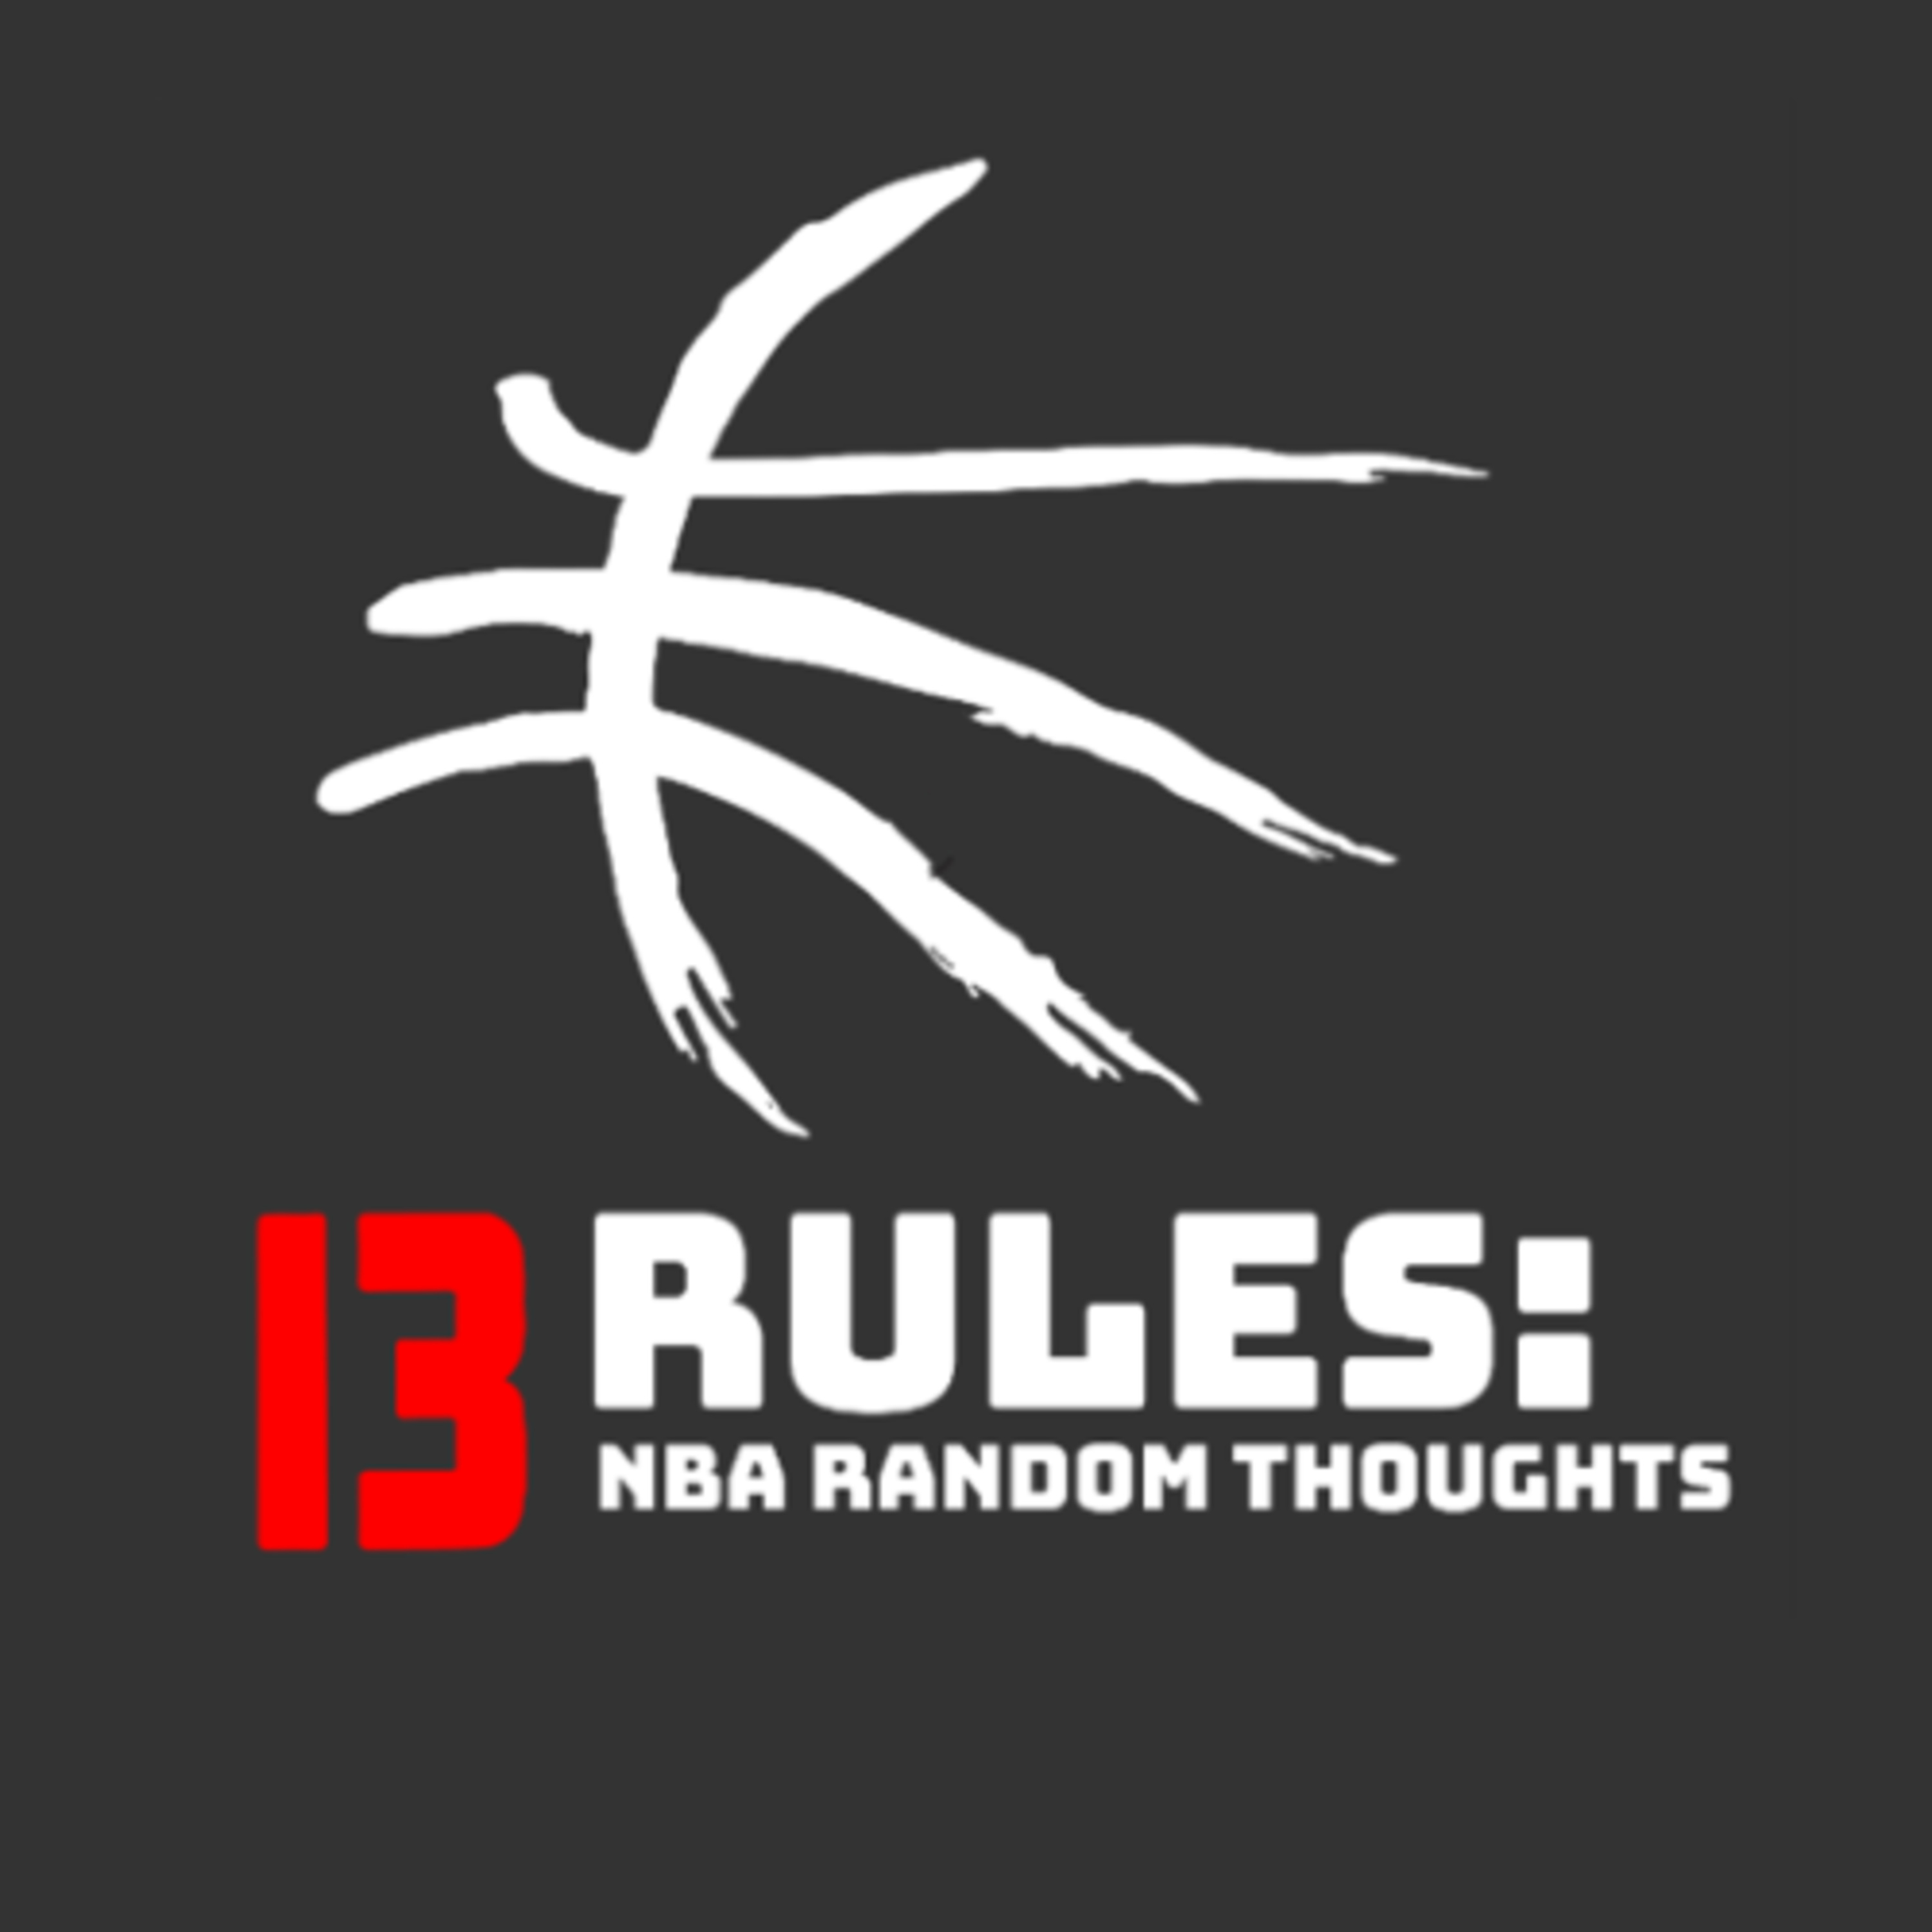 13 Rules: Random NBA Thoughts - Week 4